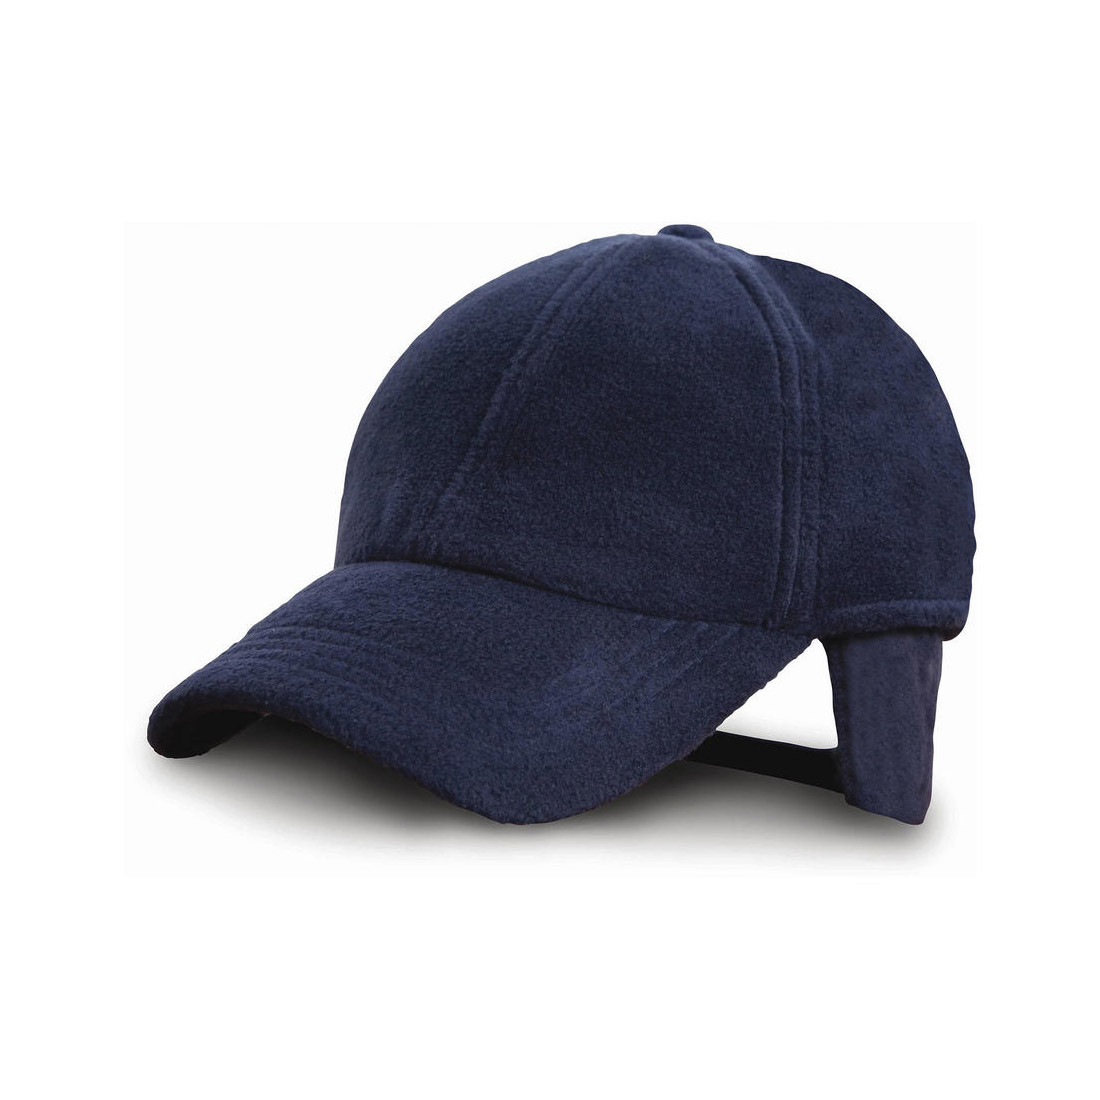 Winter Fleece Cap - Safetywear